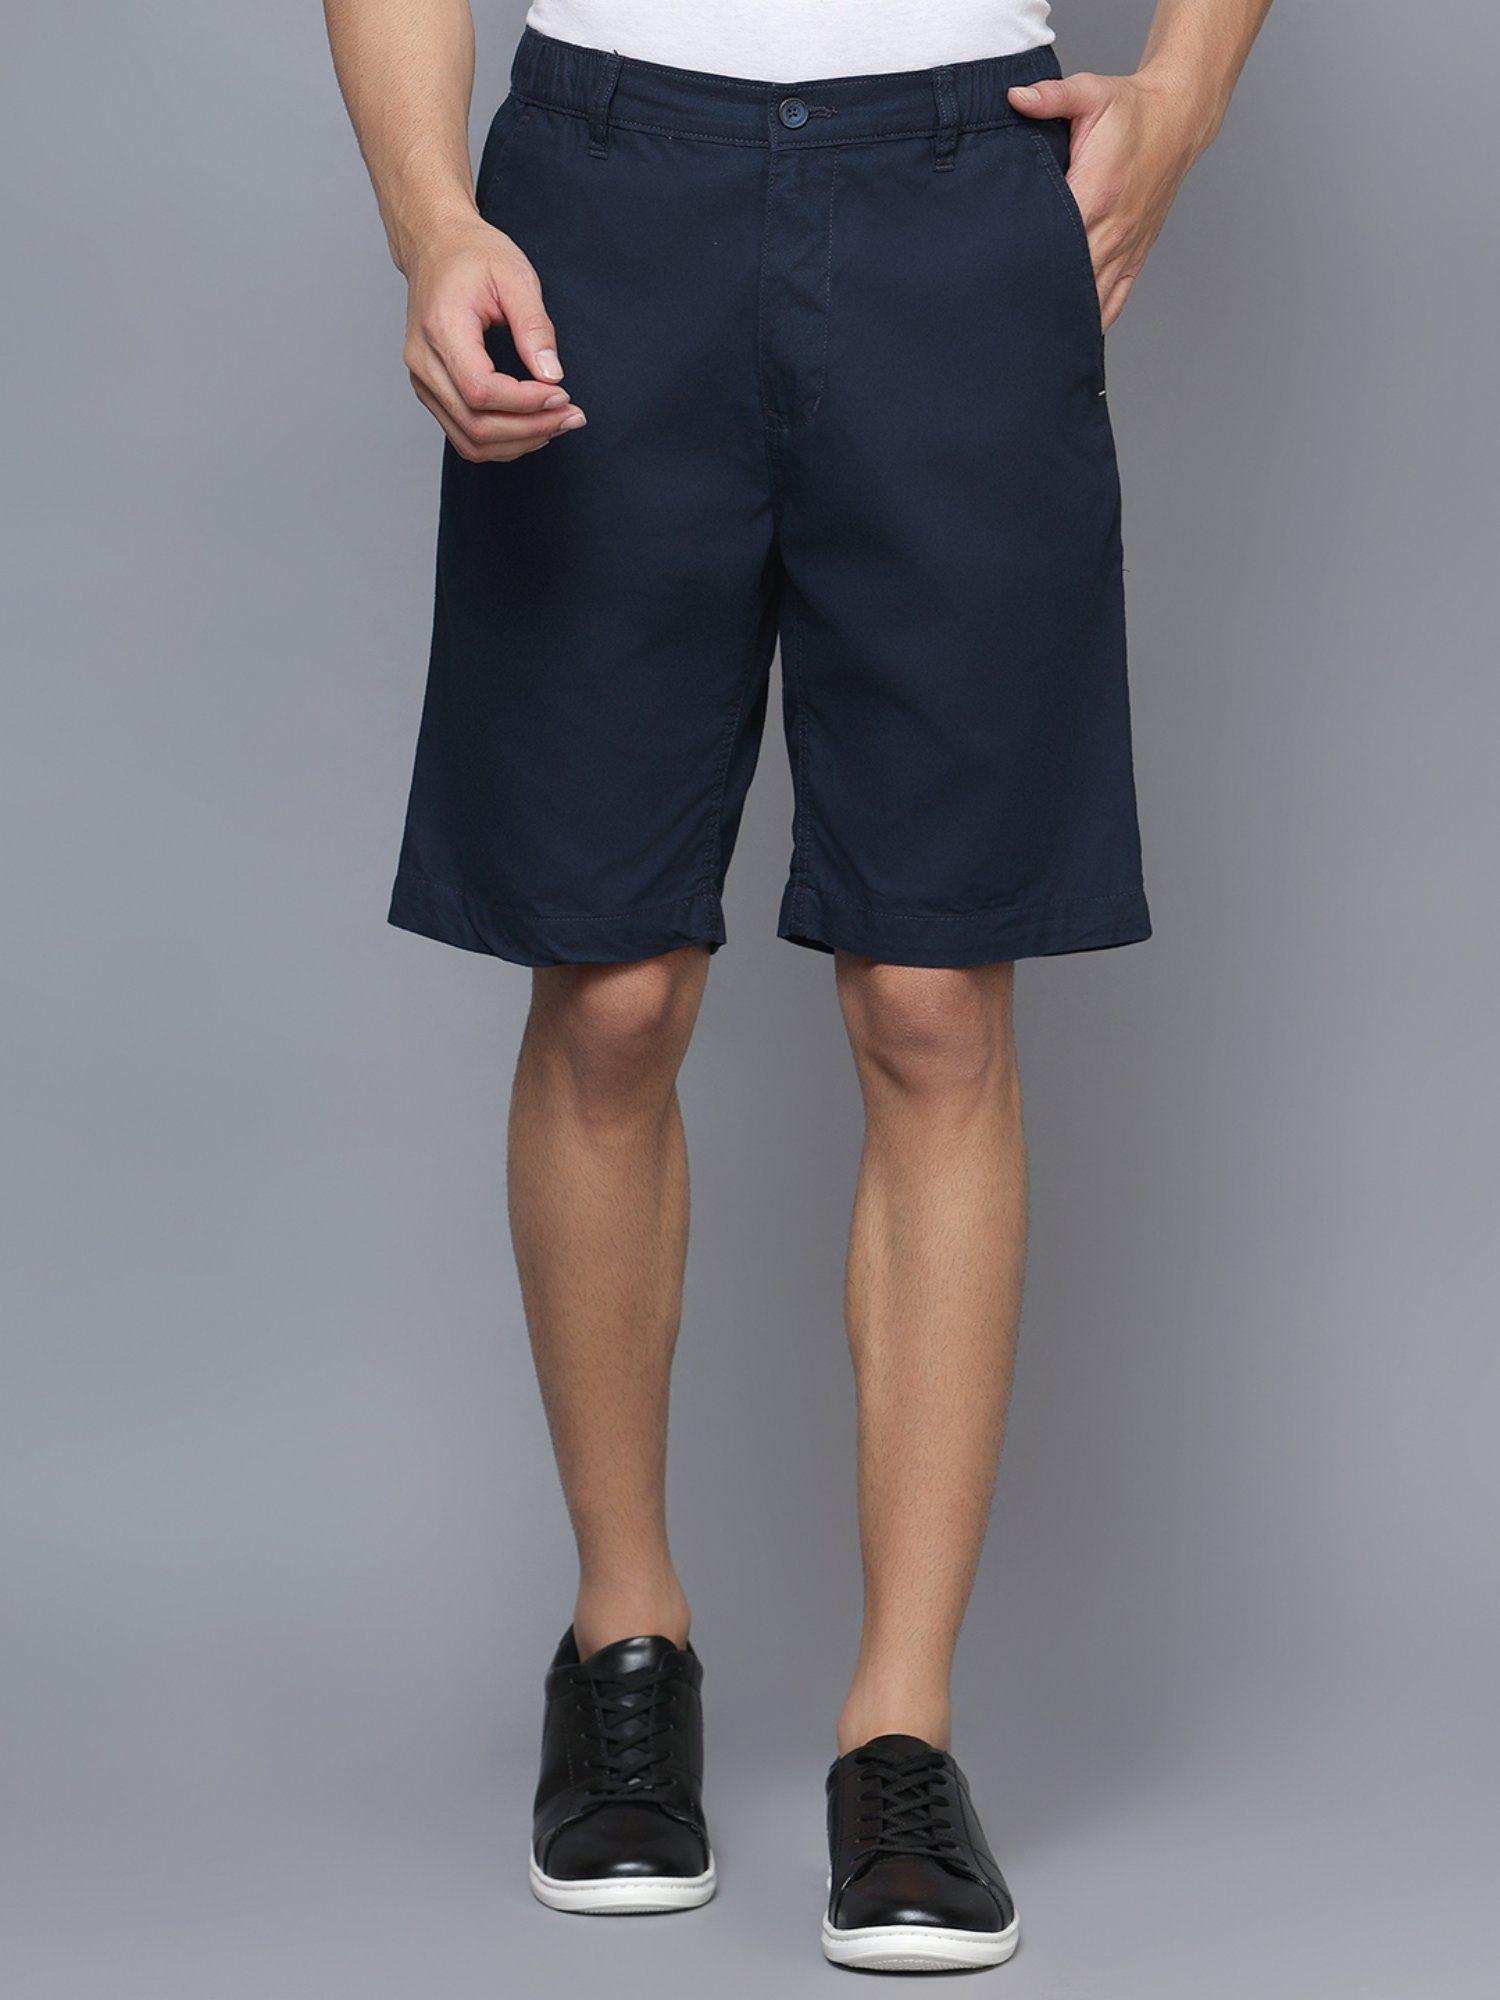 men solid navy blue shorts